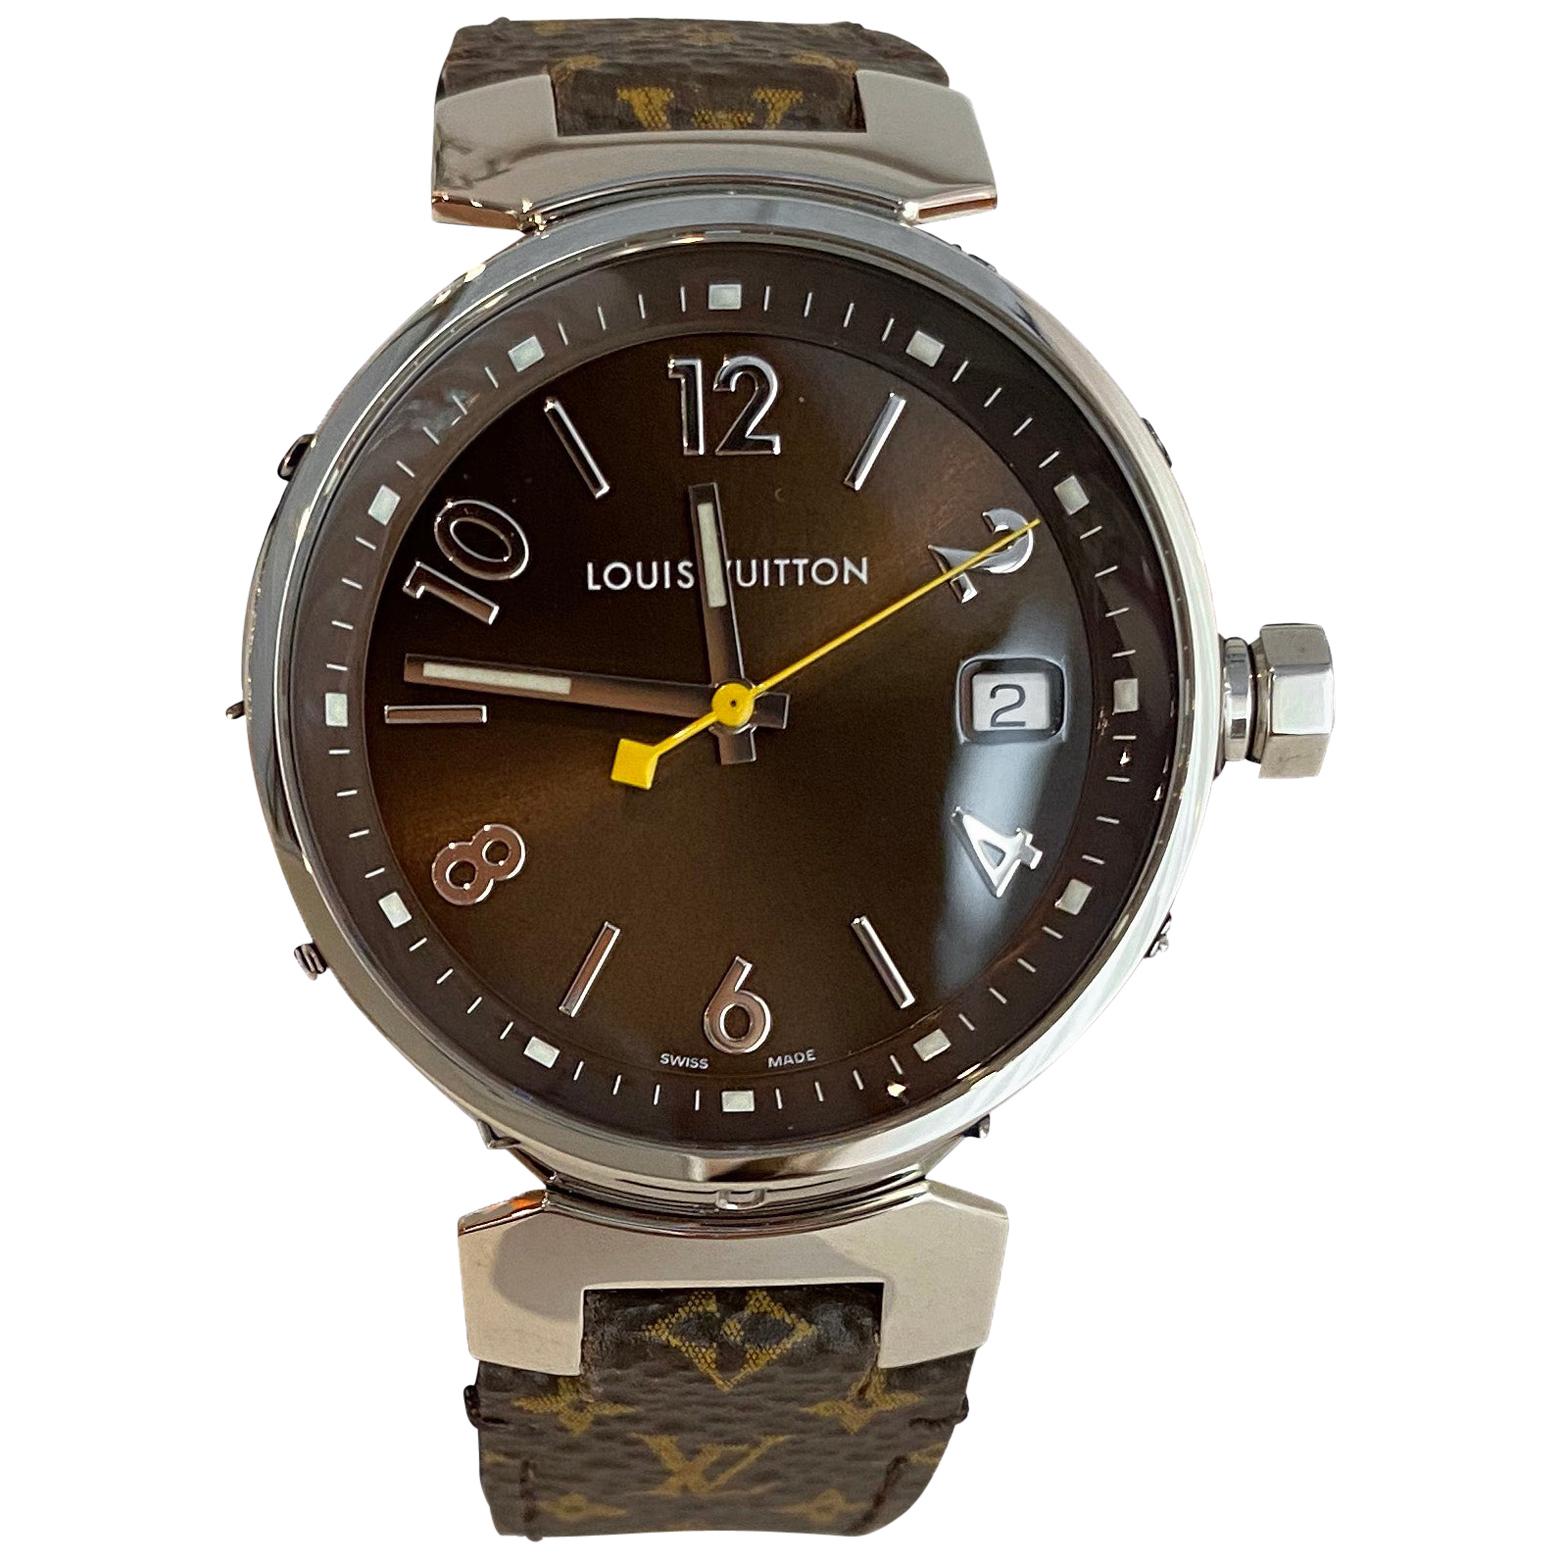 Tambour Monogram, Quartz, 34mm, Steel & Rose Gold - Watches